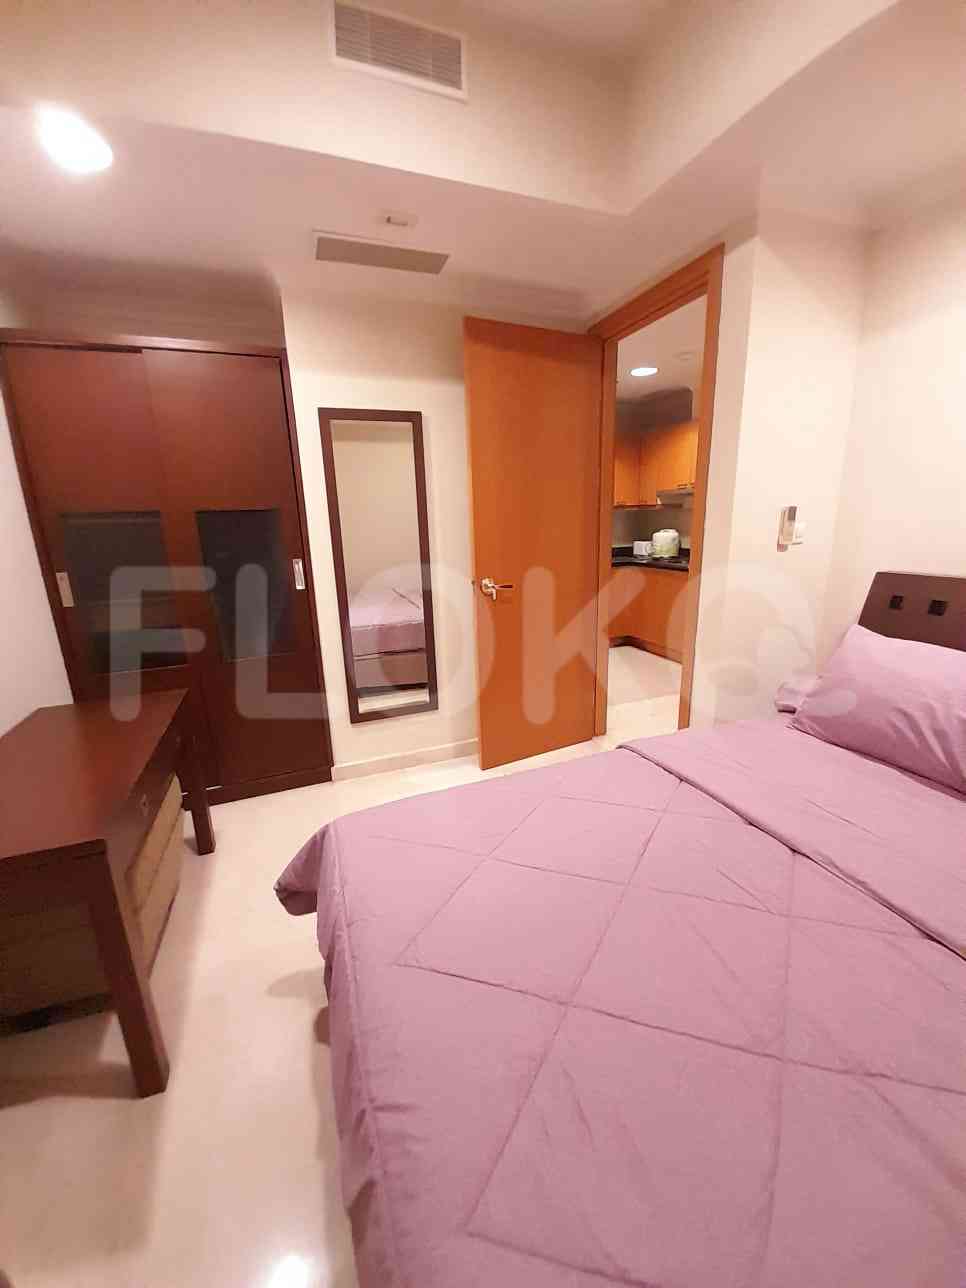 2 Bedroom on 12th Floor for Rent in Pavilion - fsc747 4